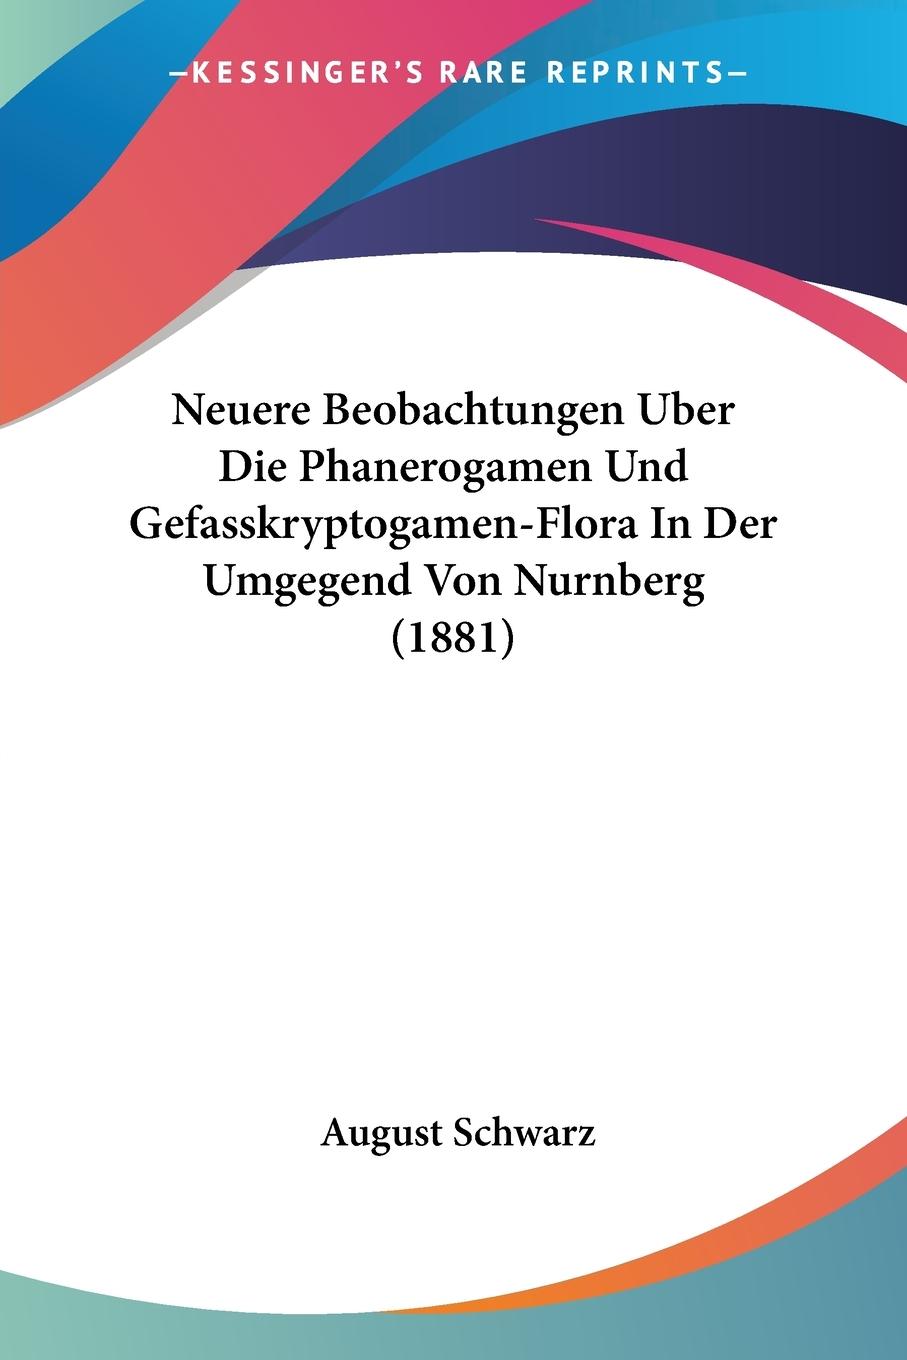 Neuere Beobachtungen Uber Die Phanerogamen Und Gefasskryptogamen-Flora In Der Umgegend Von Nurnberg (1881) - Schwarz, August